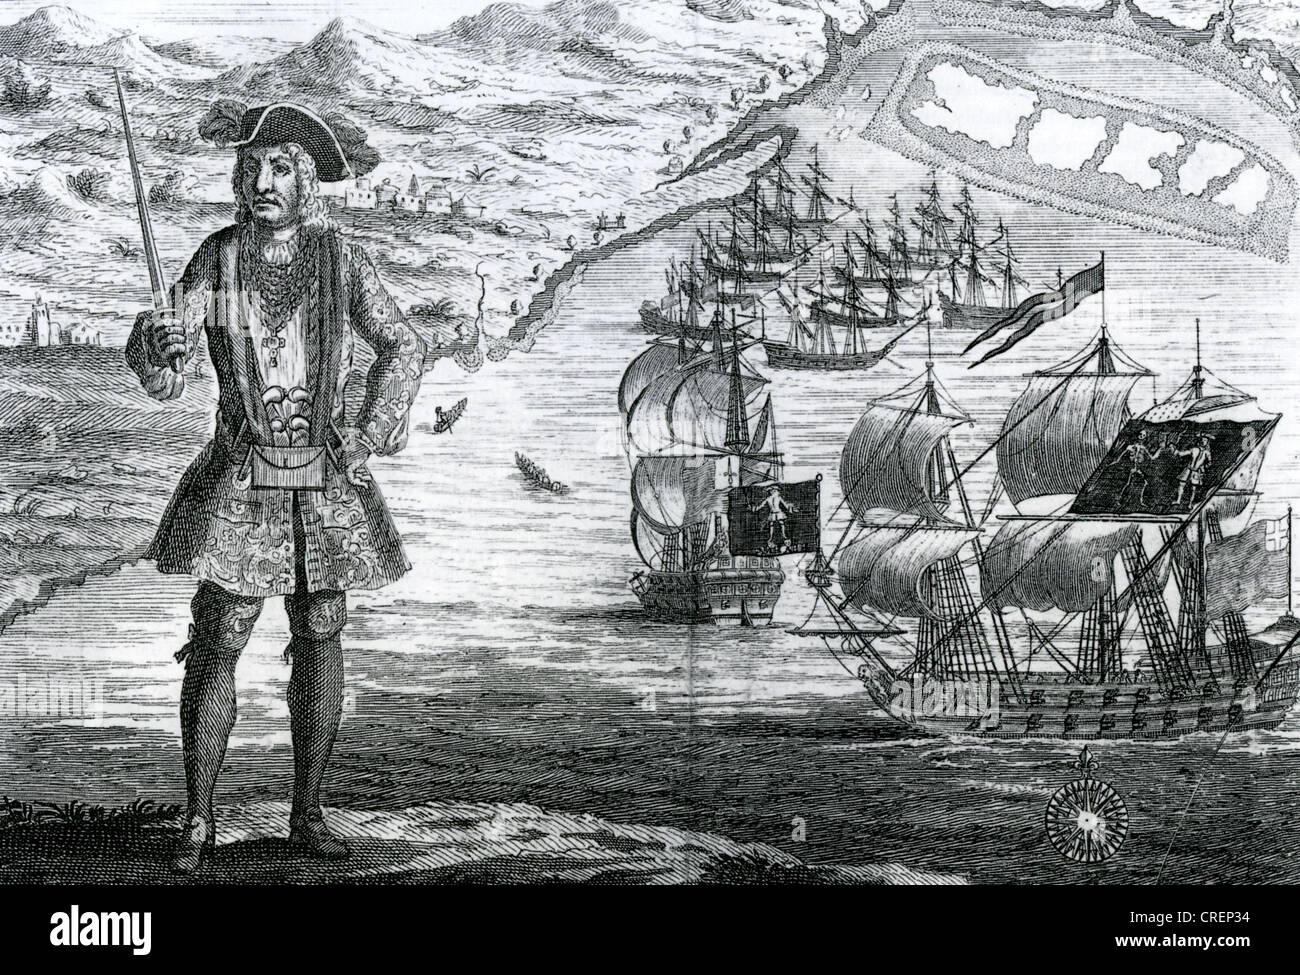 BARTHOLOMEW ROBERTS (1682-1722) aka Black Bart - walisischen Piraten in Ouidah an der Guinea-Küste Afrikas im Jahre 1722. Siehe Beschreibung Stockfoto